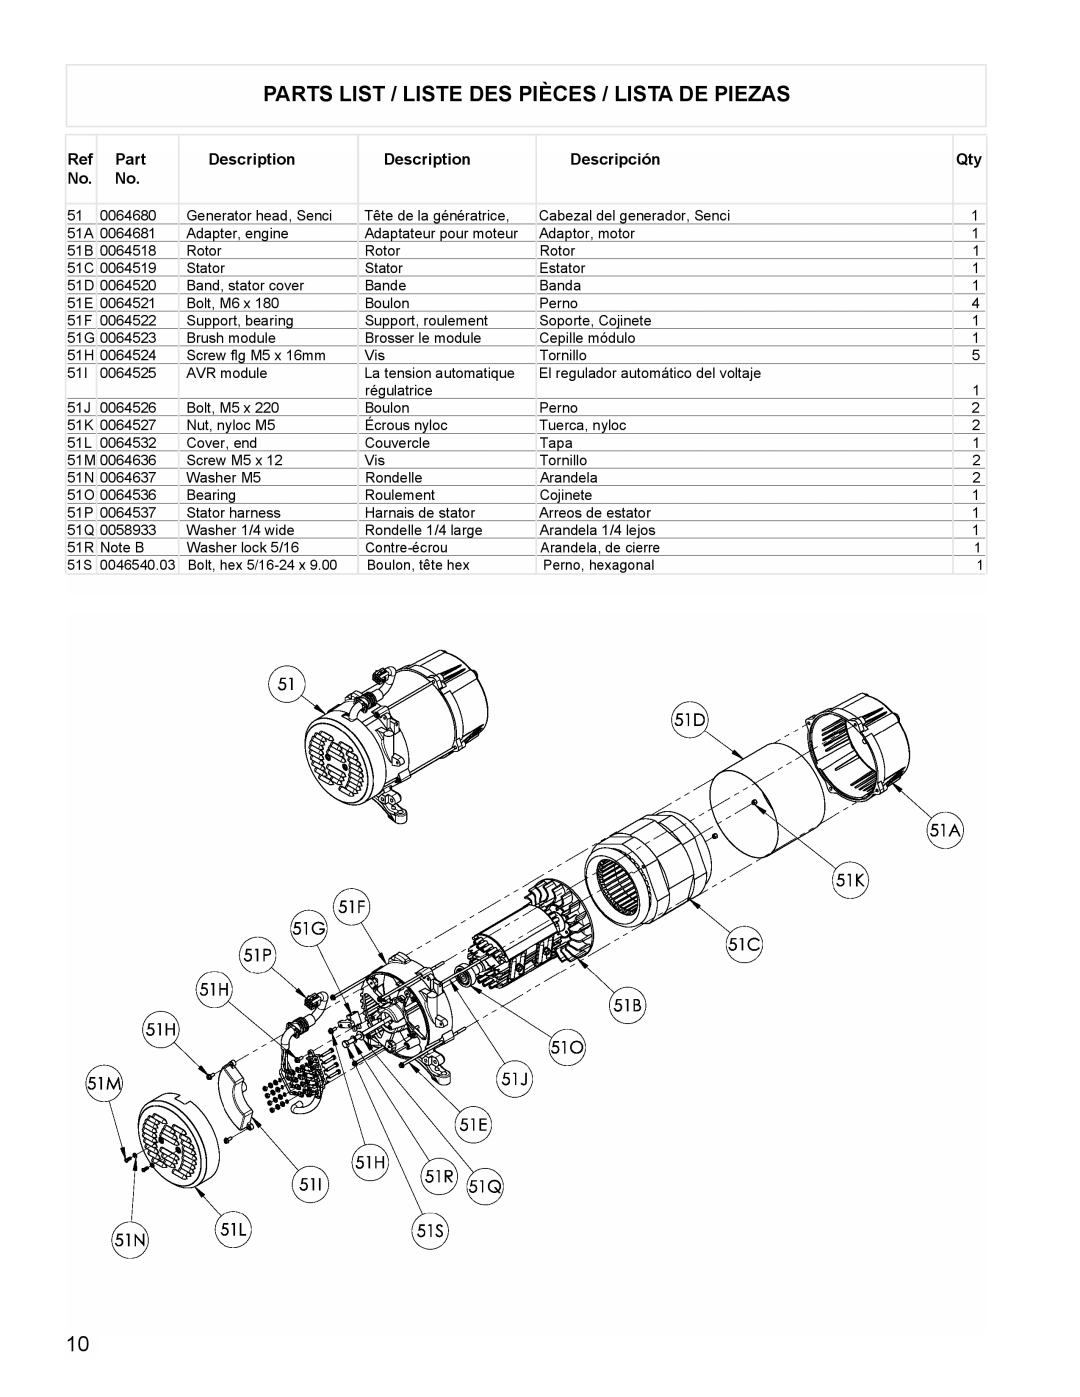 Powermate PM0675700 manual Parts List / Liste Des Pièces / Lista De Piezas, Description, Descripción 